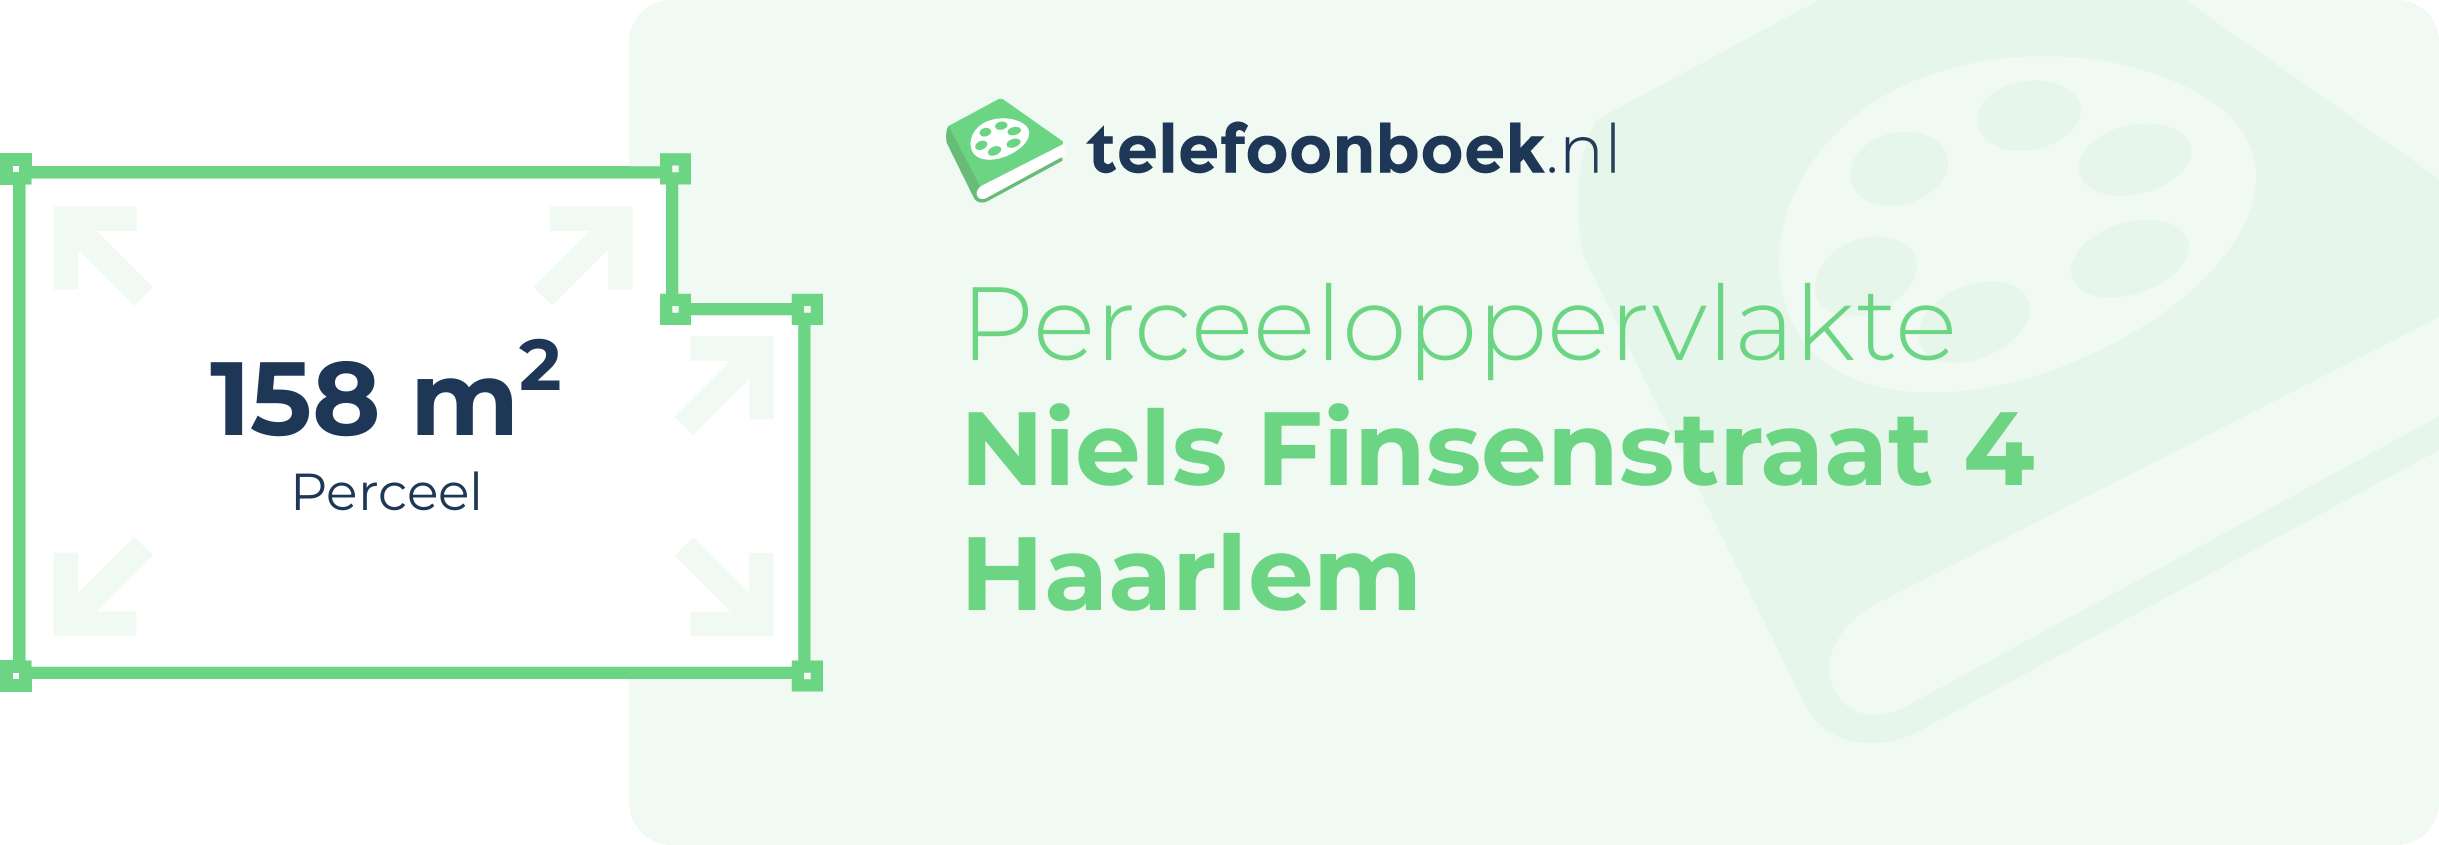 Perceeloppervlakte Niels Finsenstraat 4 Haarlem